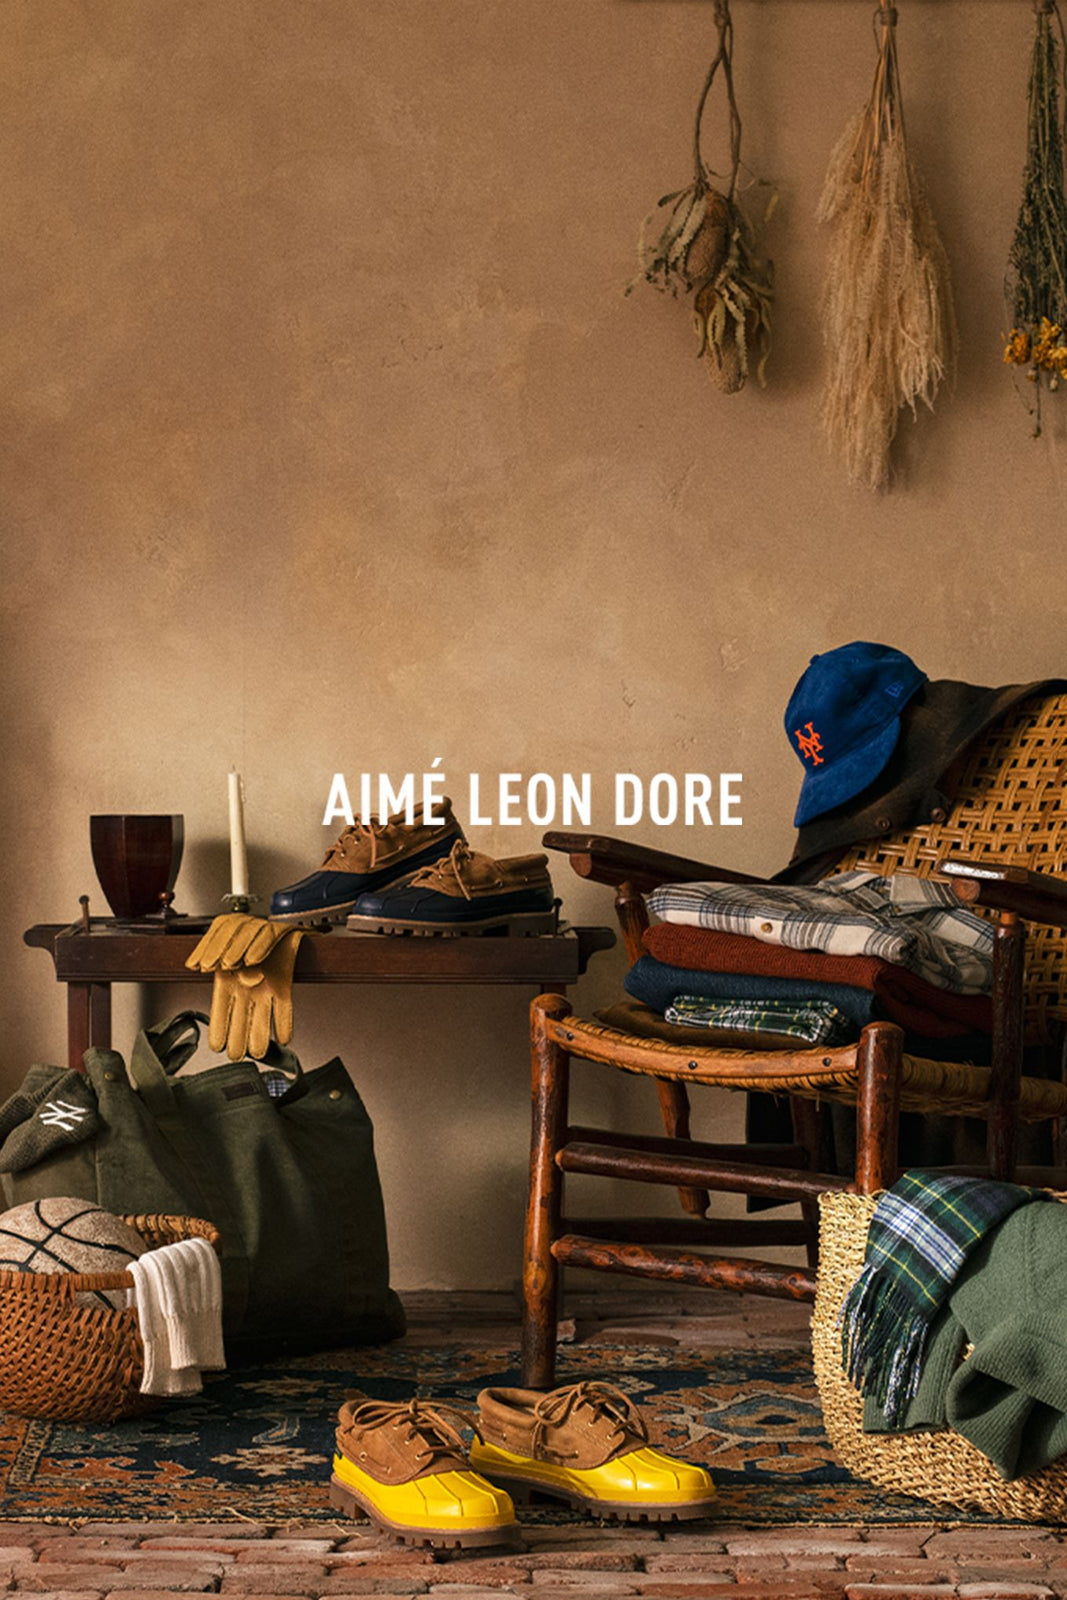 Aimé Leon Dore F/W 22 Drop 2 Campaign (Aimé Leon Dore)